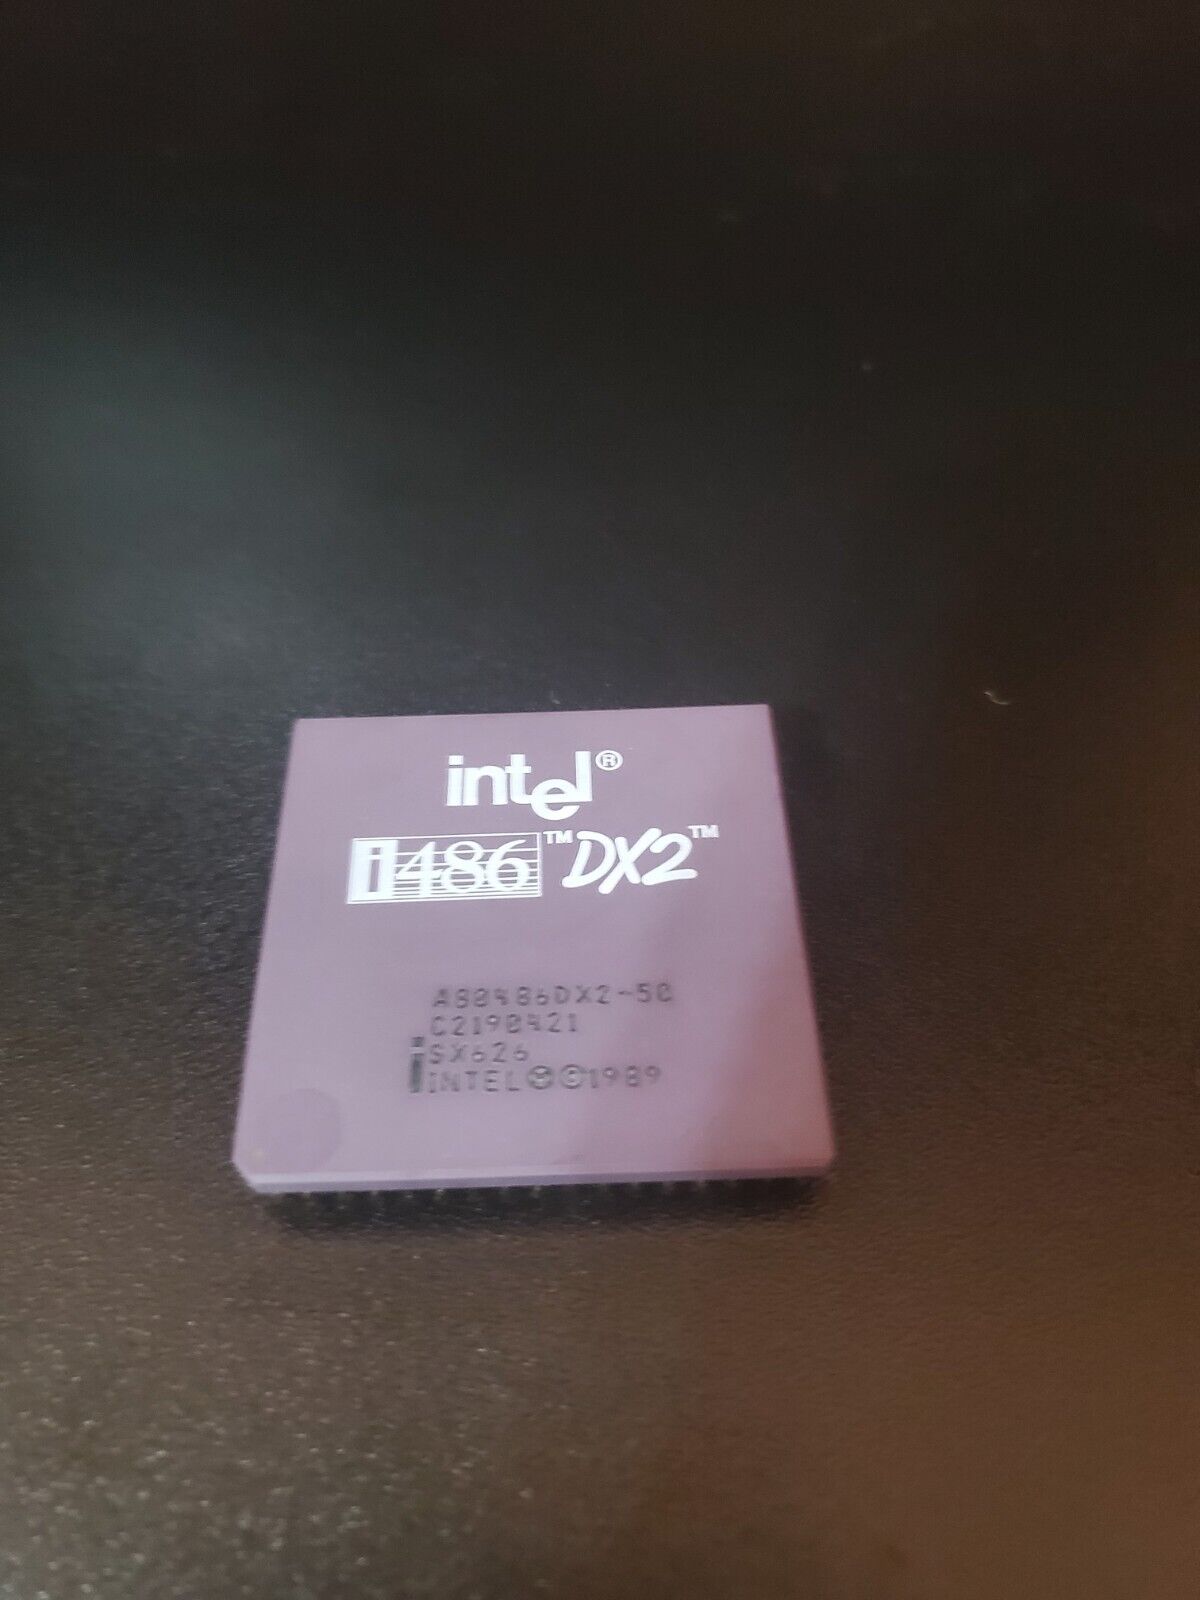 Intel i486 DX2 A80486DX2-50 SX626 Processor Gold Pins, No Bent Pins